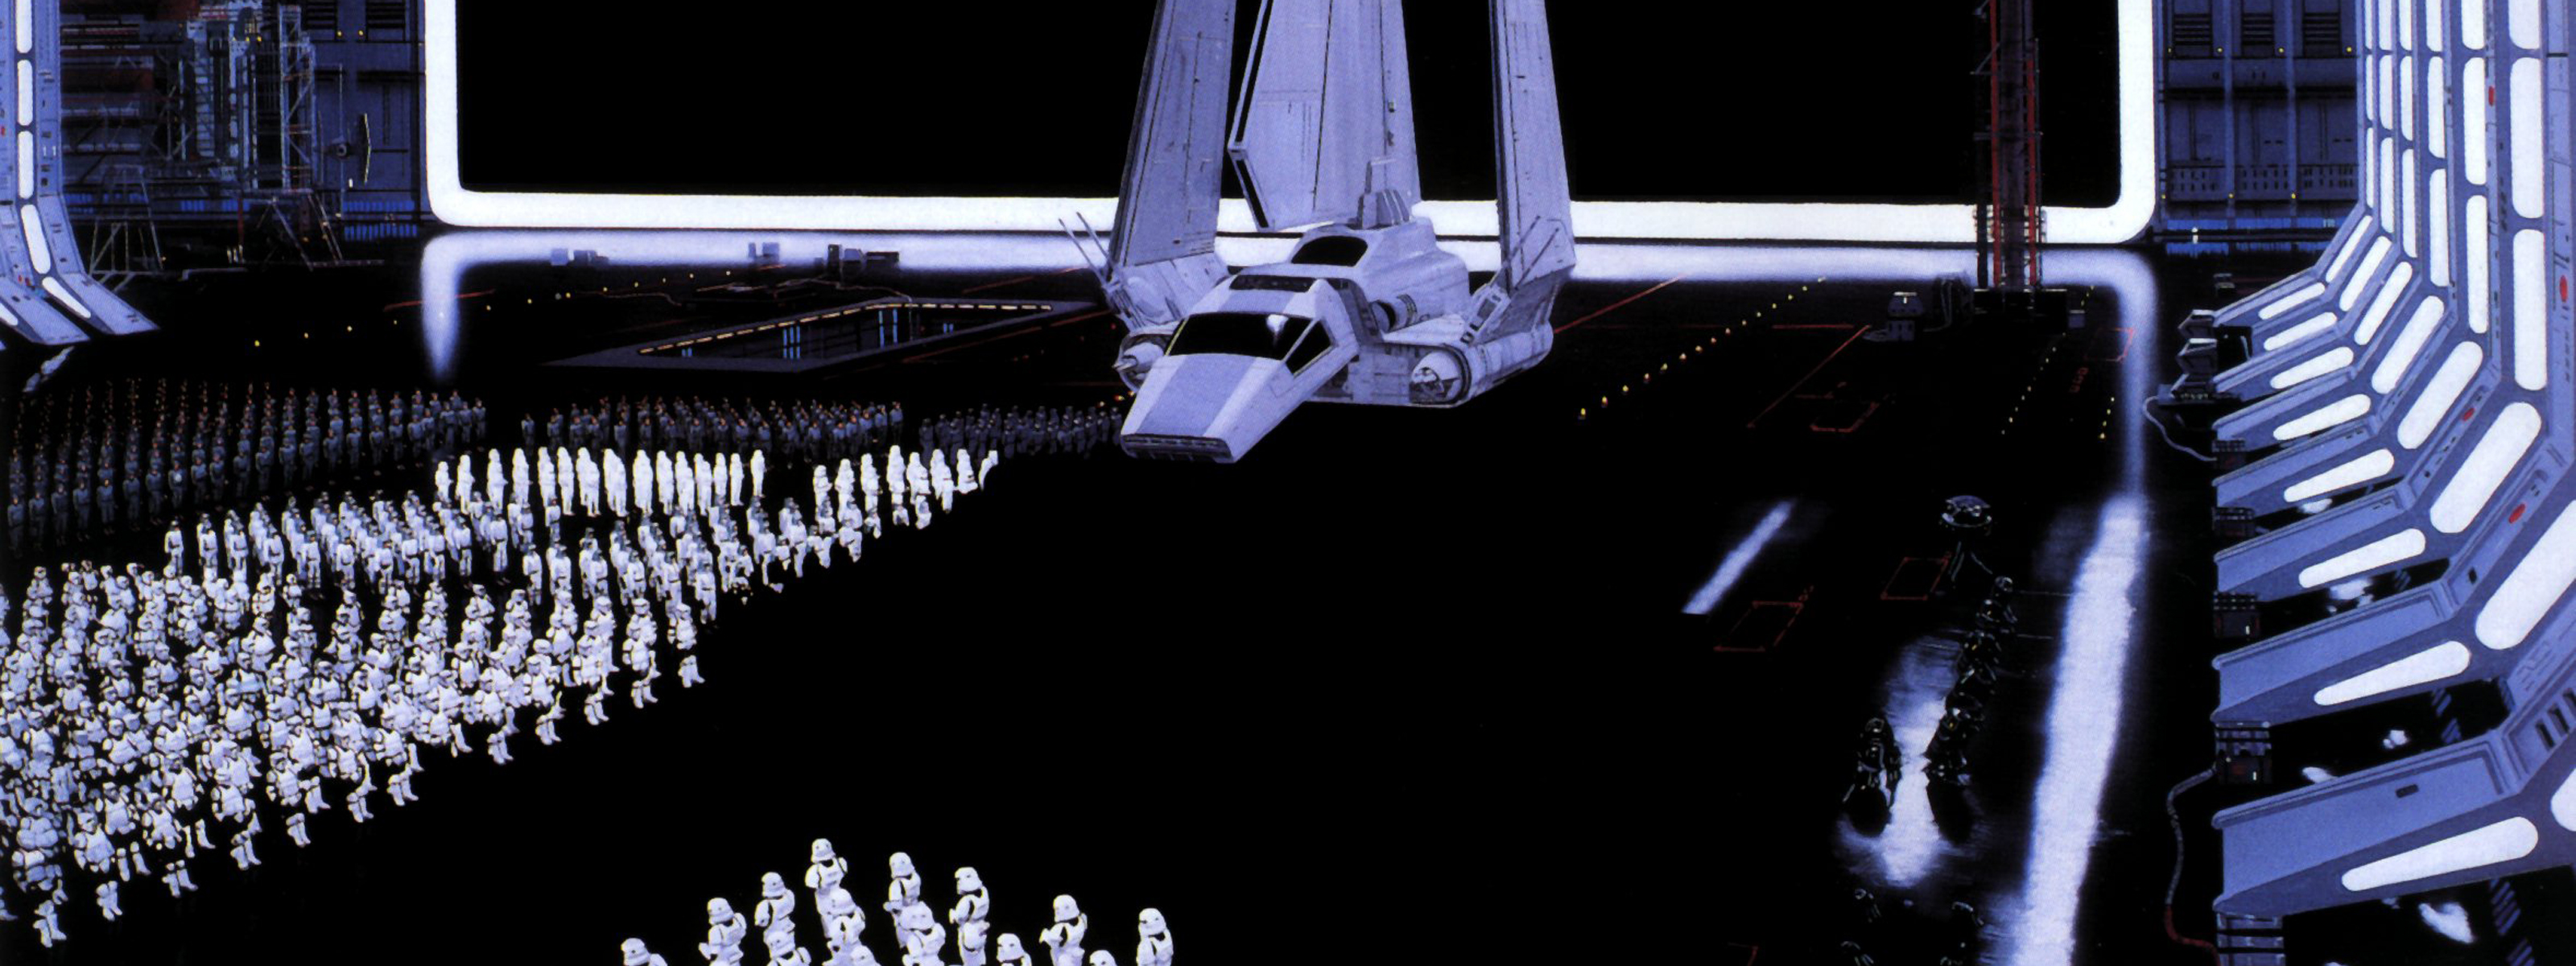 Star Wars Death Star Storm Trooper Imperials wallpaper 3200x1200